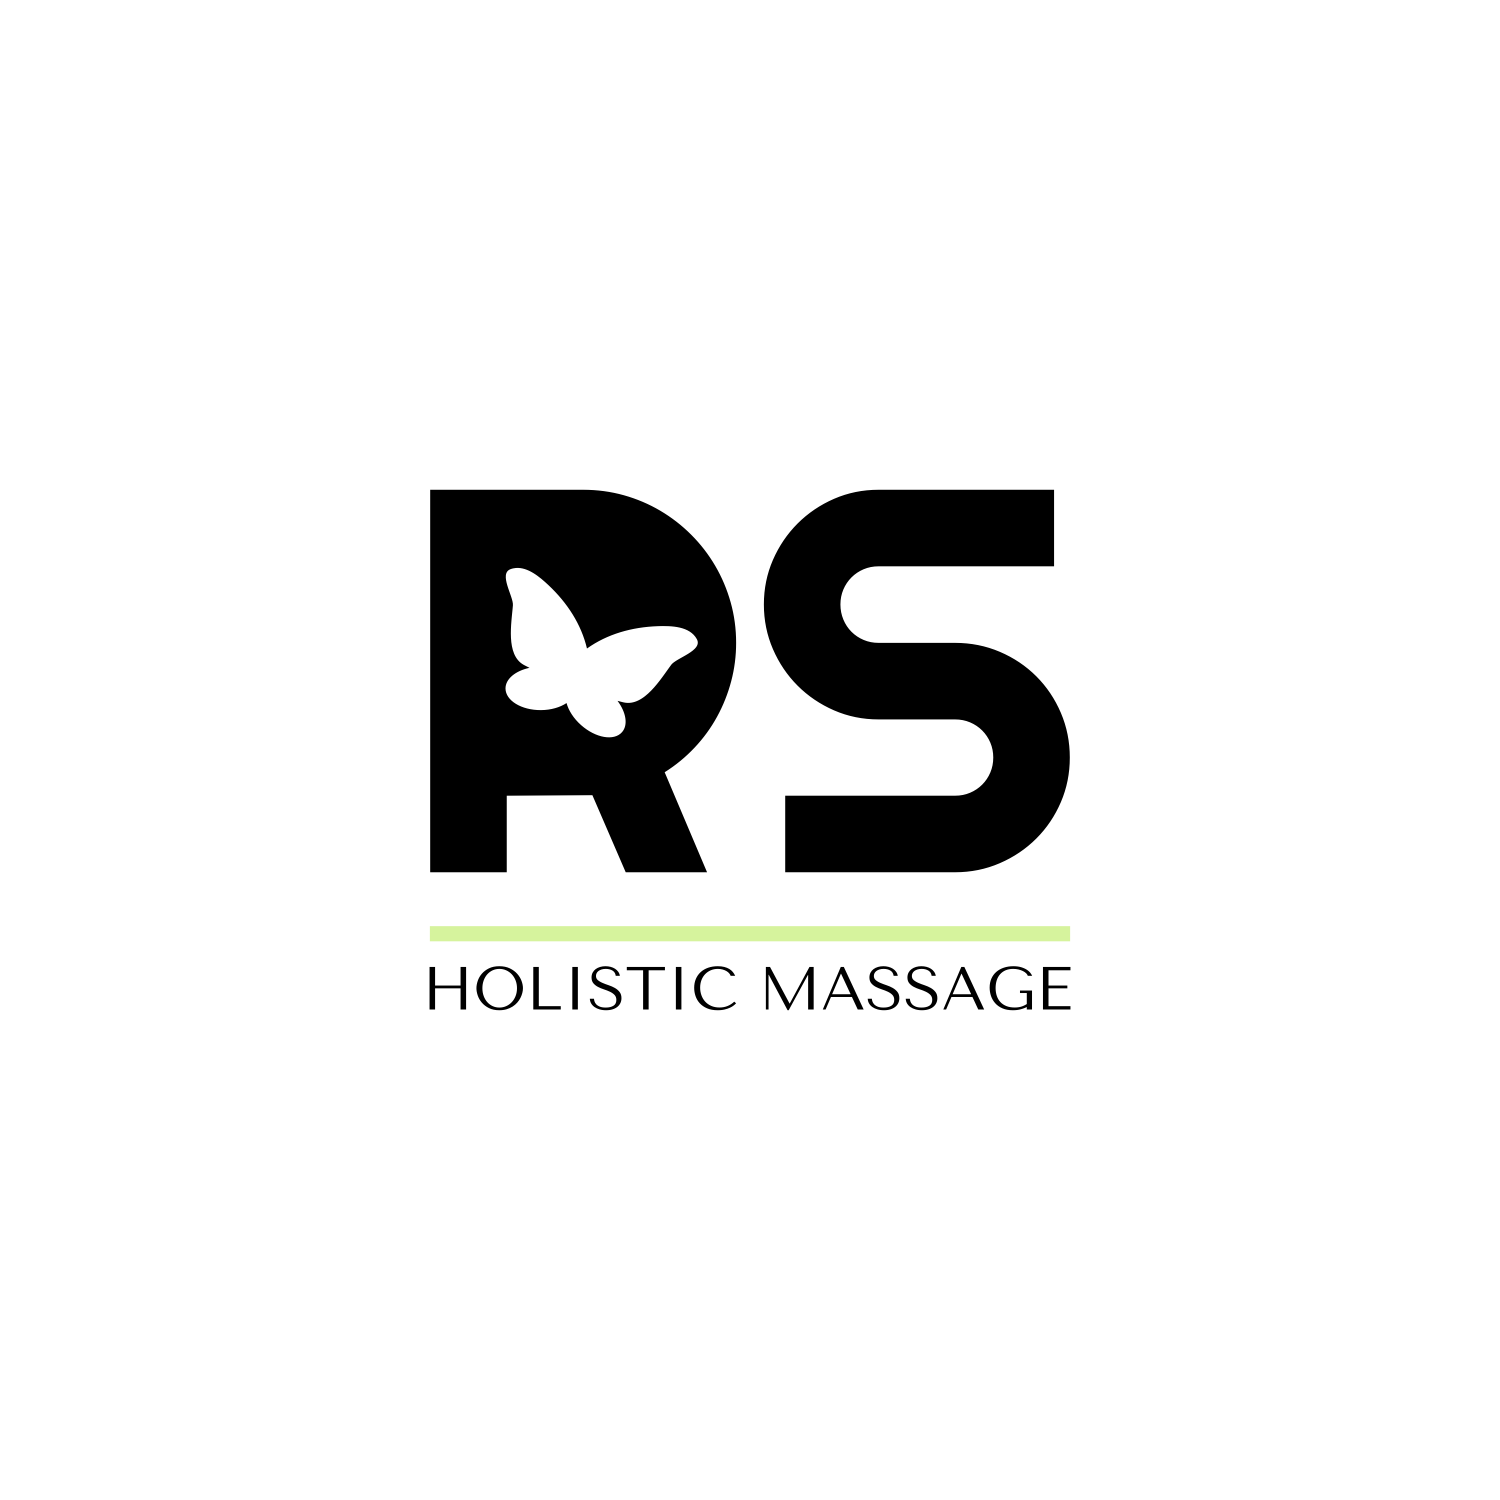 Logotipų kūrimas, logotipo dizainas verslui, RS Holistic Massage, holistinio masažo meistrė